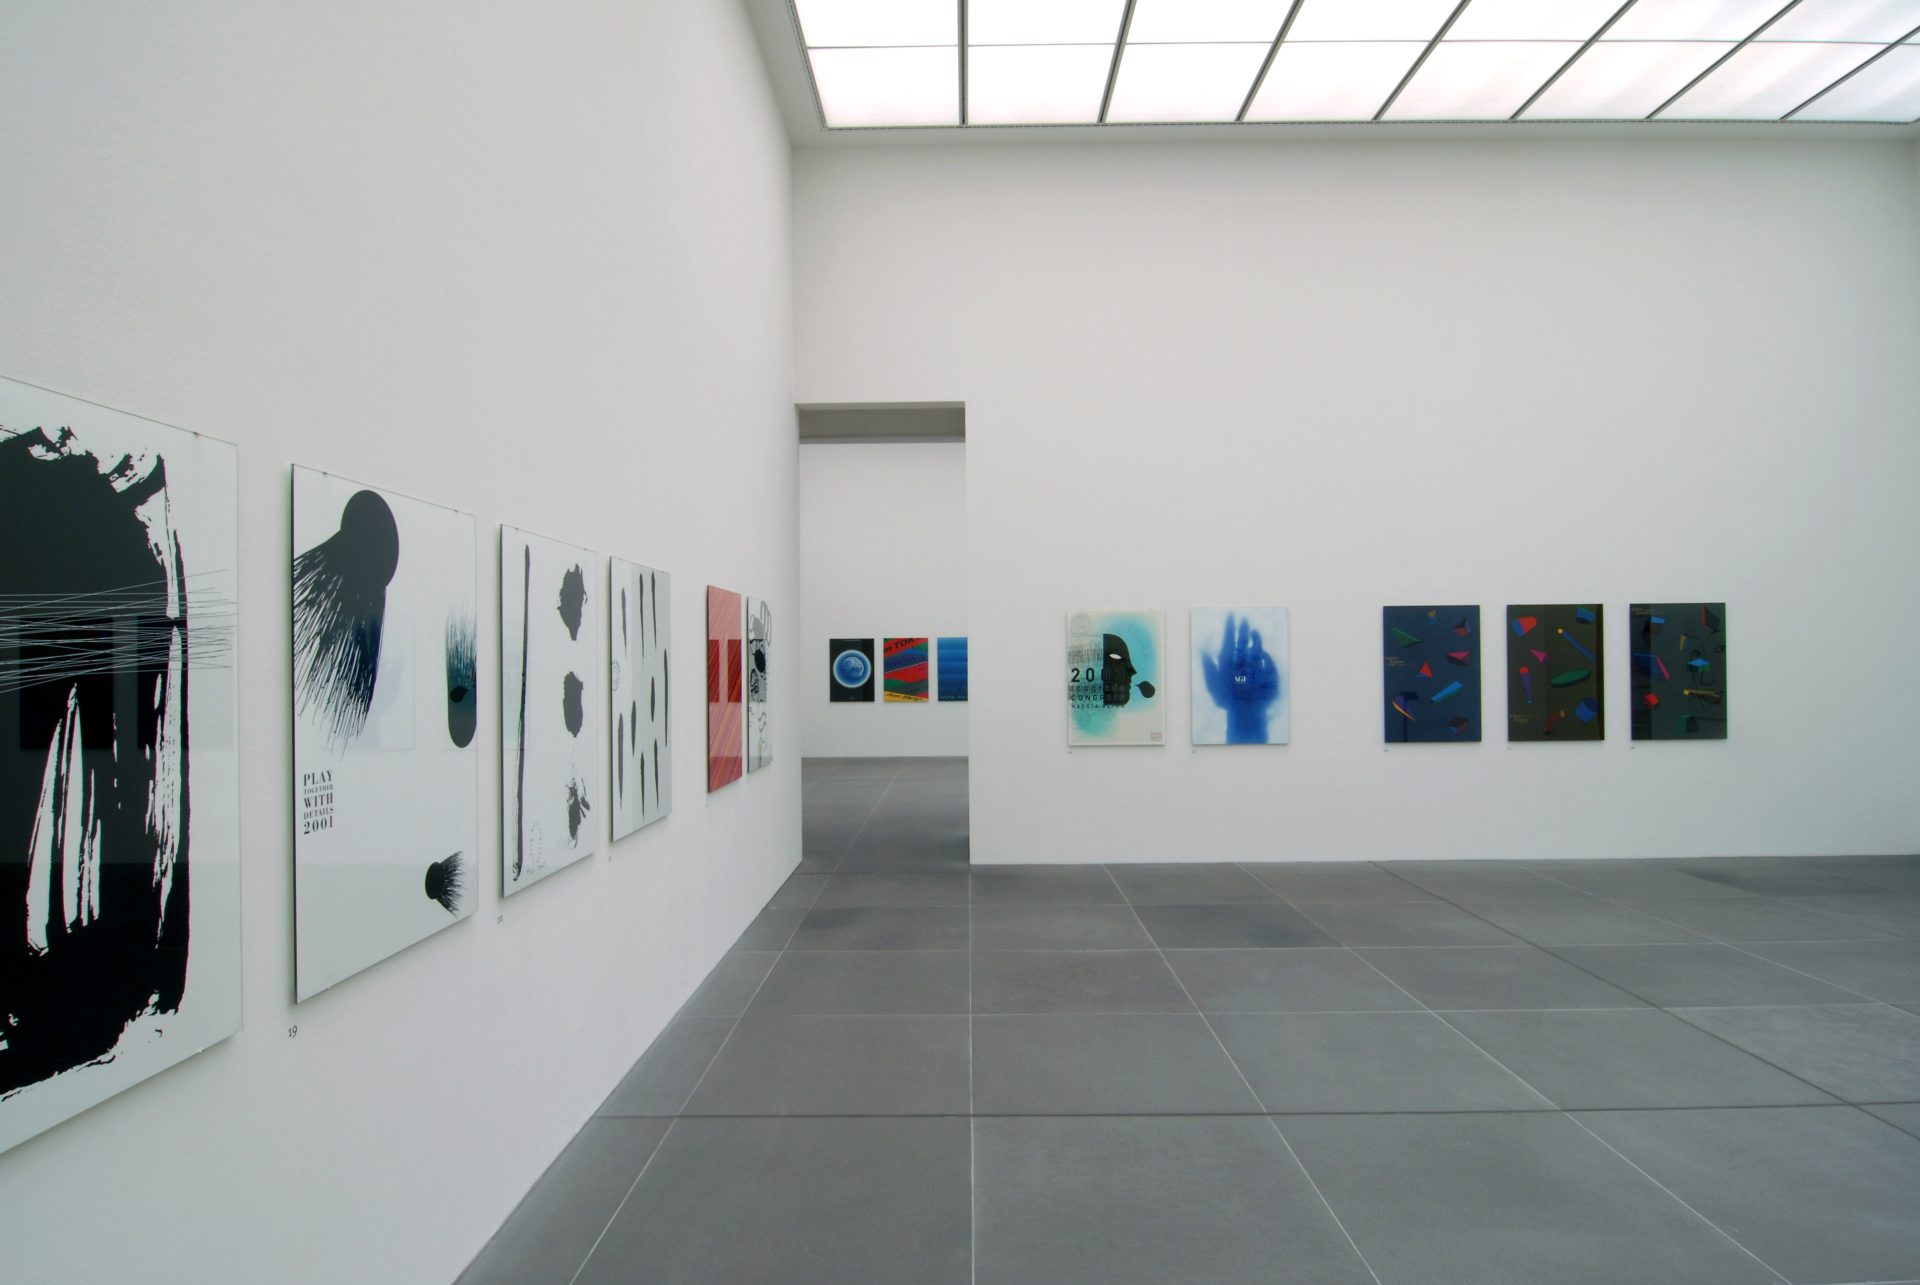 Zu sehen ist ein Ausstellungsraum des Museums, ein sogenannter White Cube, in dem an den Wänden verschiedene farbige wie schwarz-weiß Plakate des Künstlers hängen. Sie sind horizontal aneinander gereiht und ungefähr auf Augenhöhe angebracht.